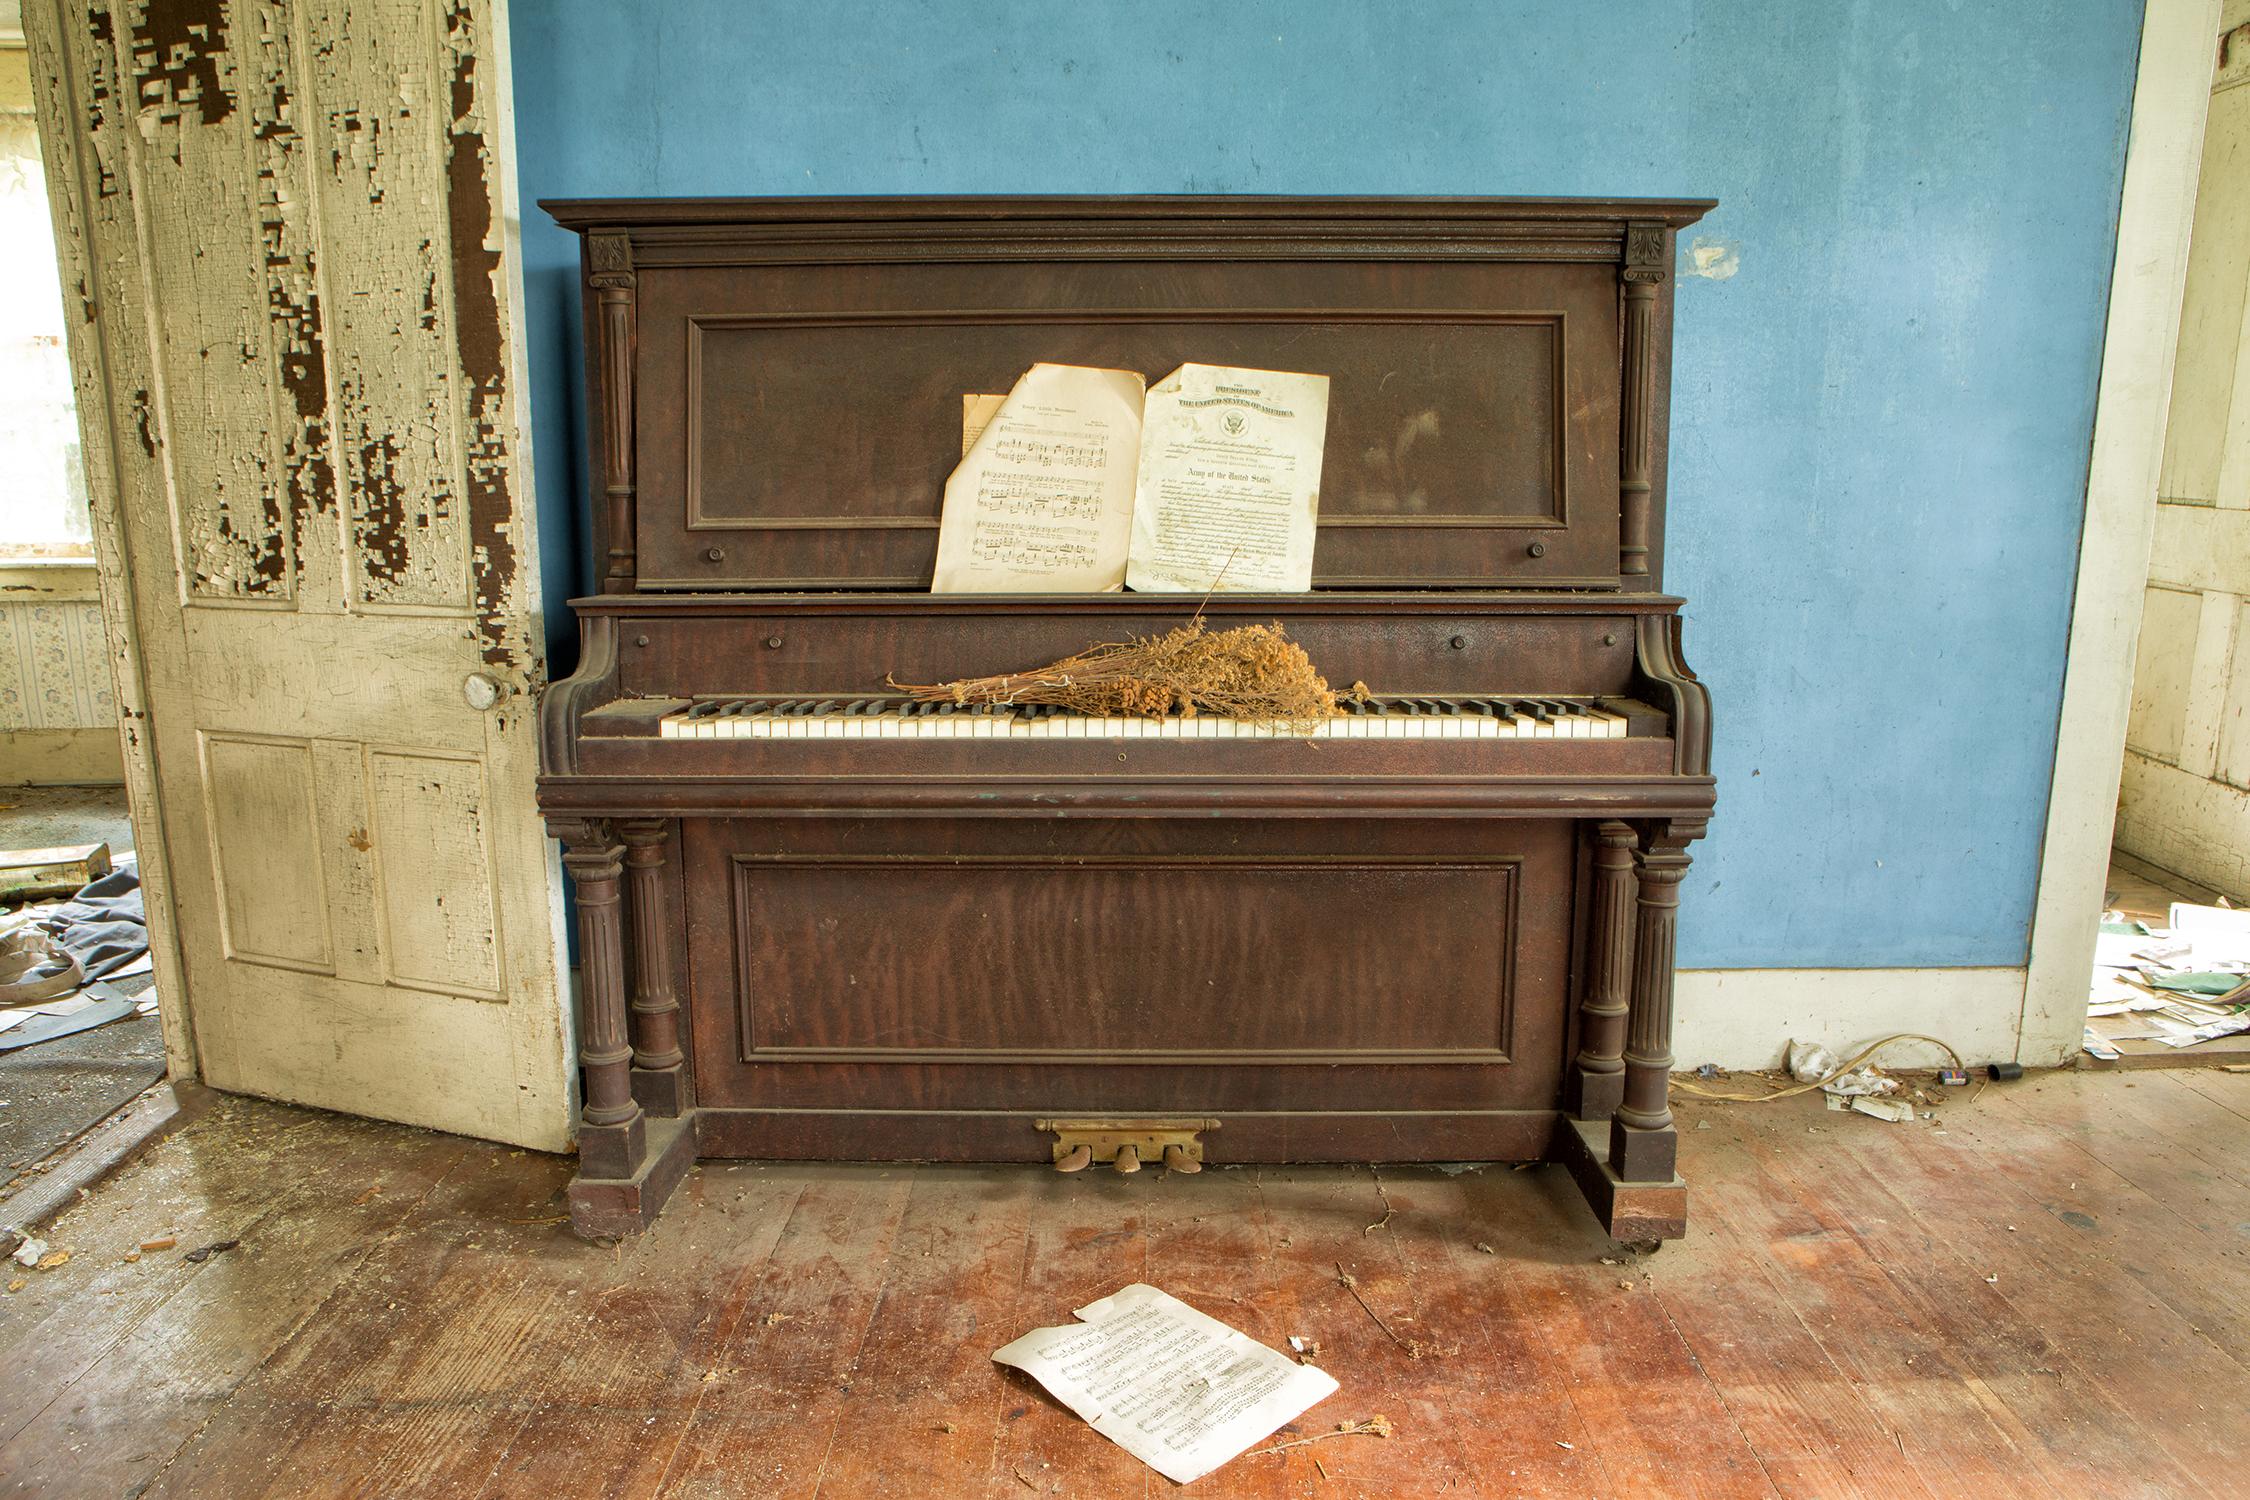 Rebecca Skinner Color Photograph - "Farmhouse Blues", color photograph, abandoned farmhouse, piano, metal print